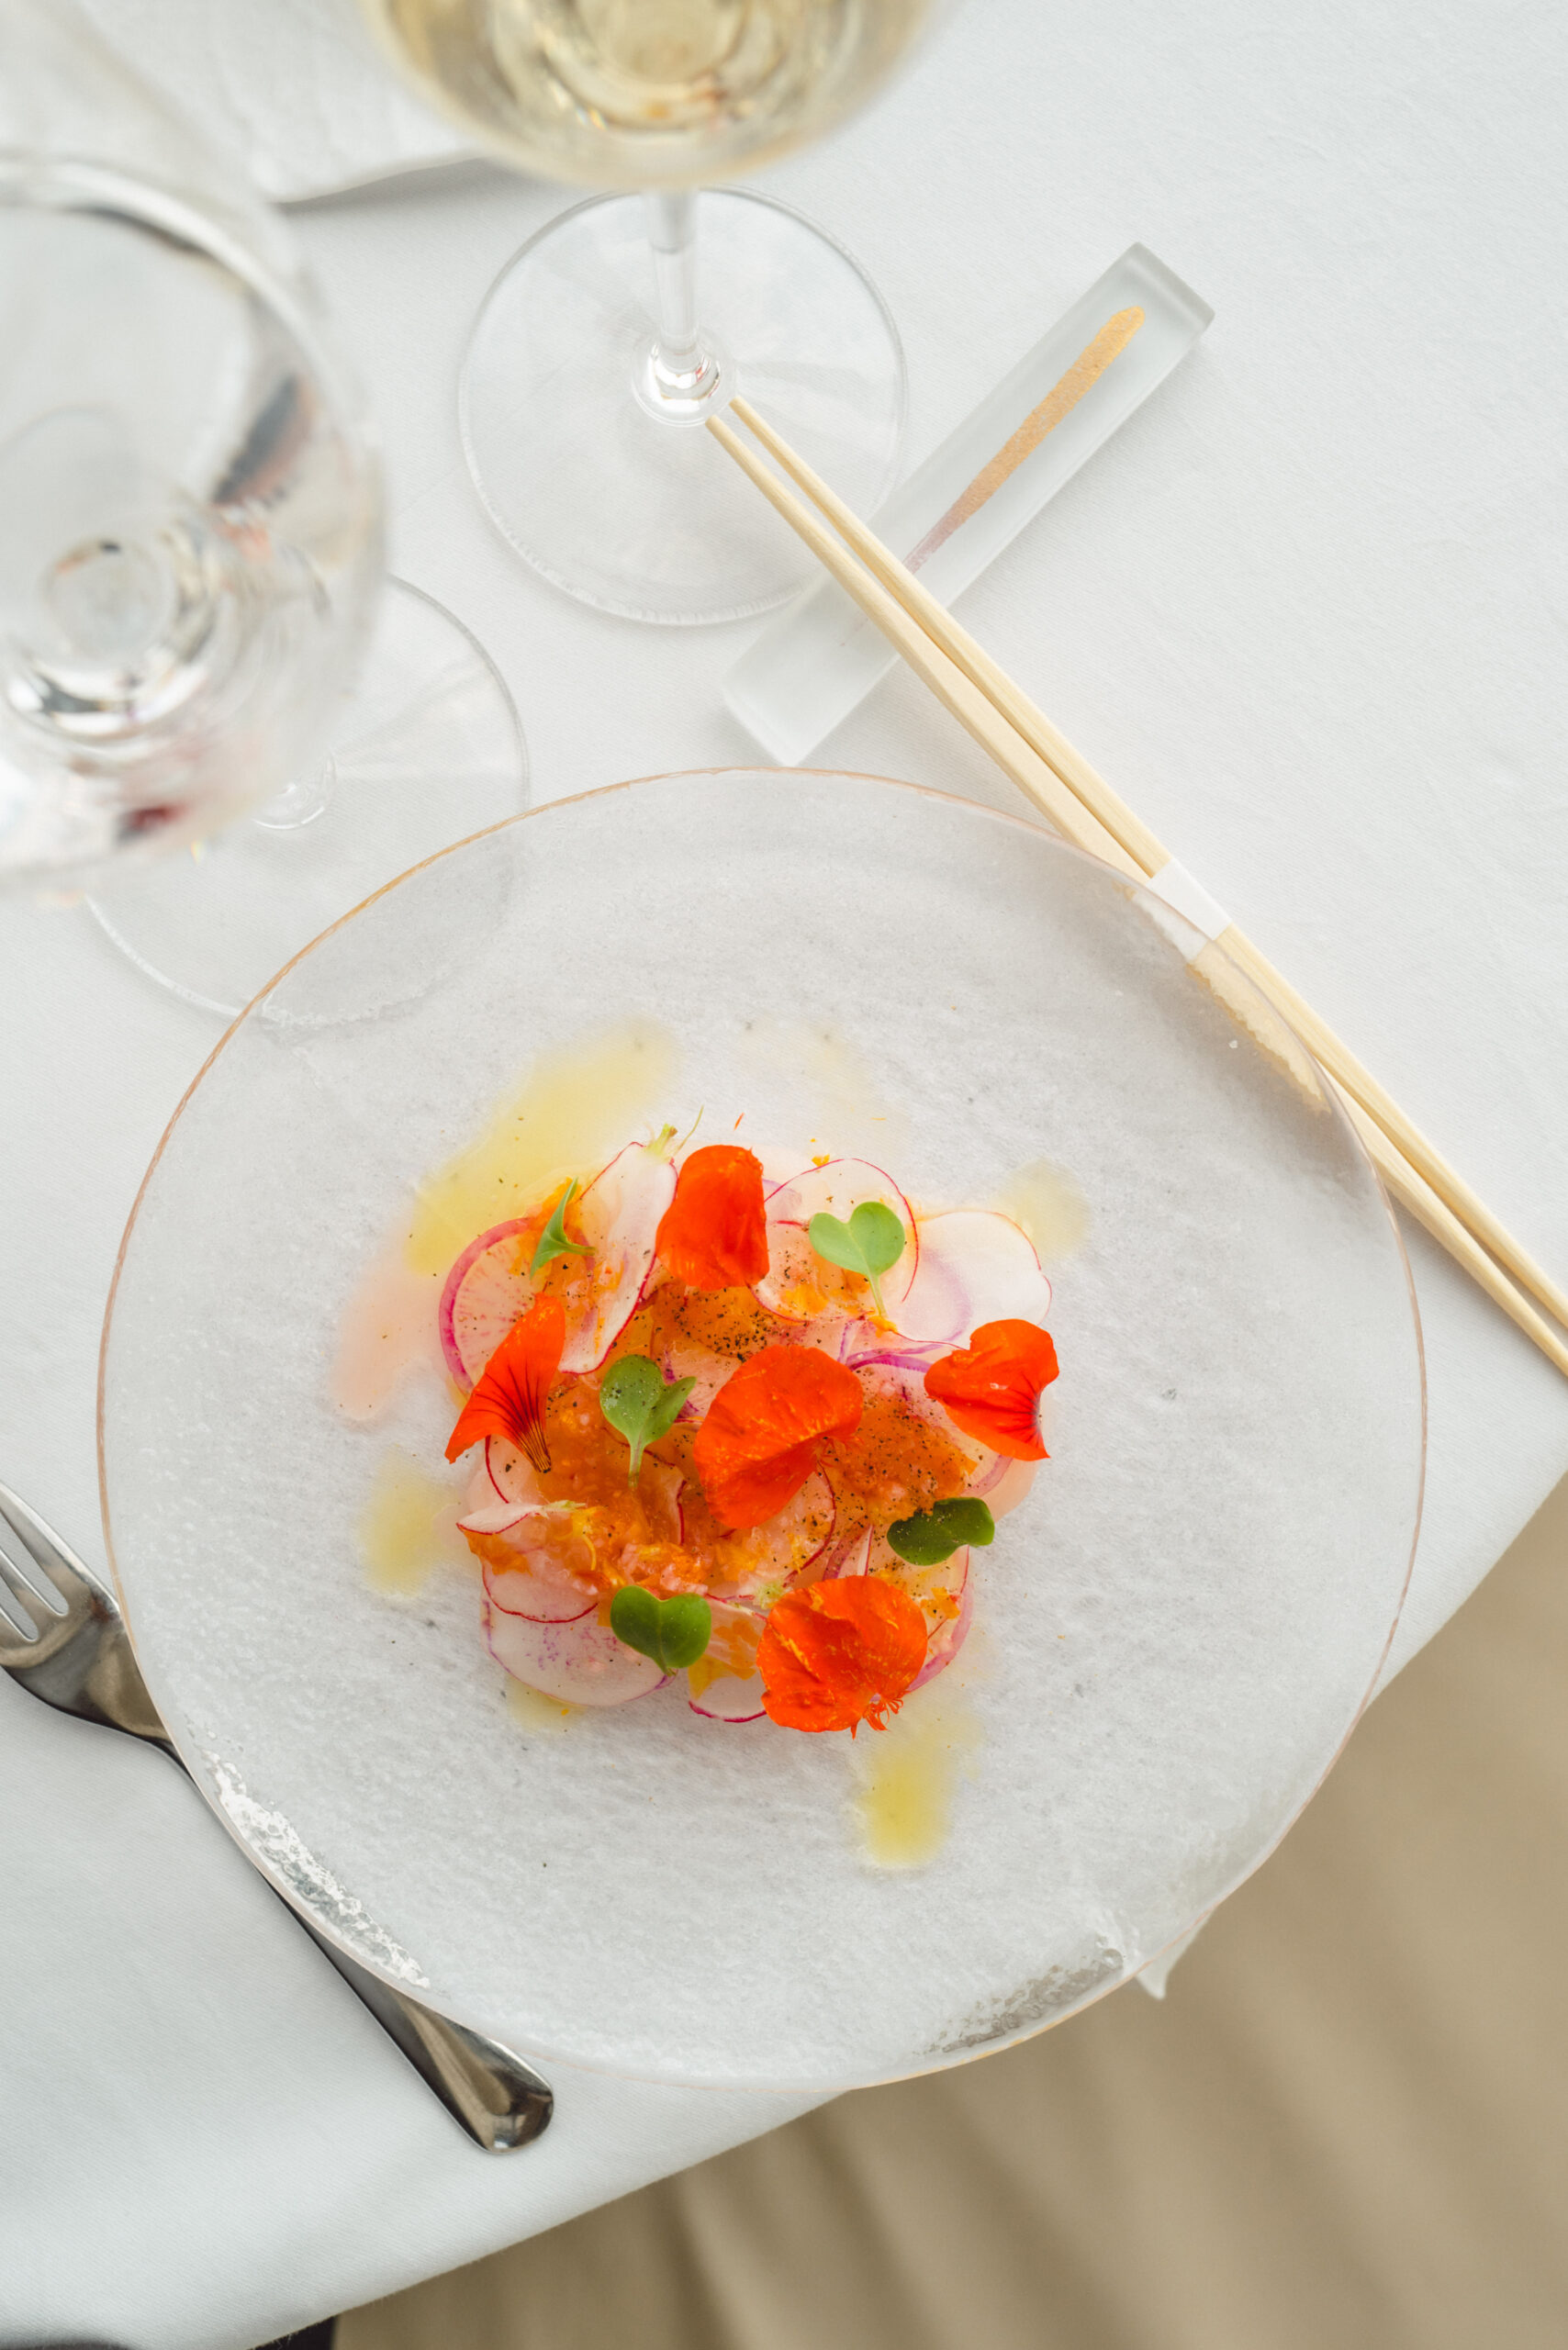 No Four Seasons Hotel você pode encontrar o Vernick Fish, um luxuoso restaurante